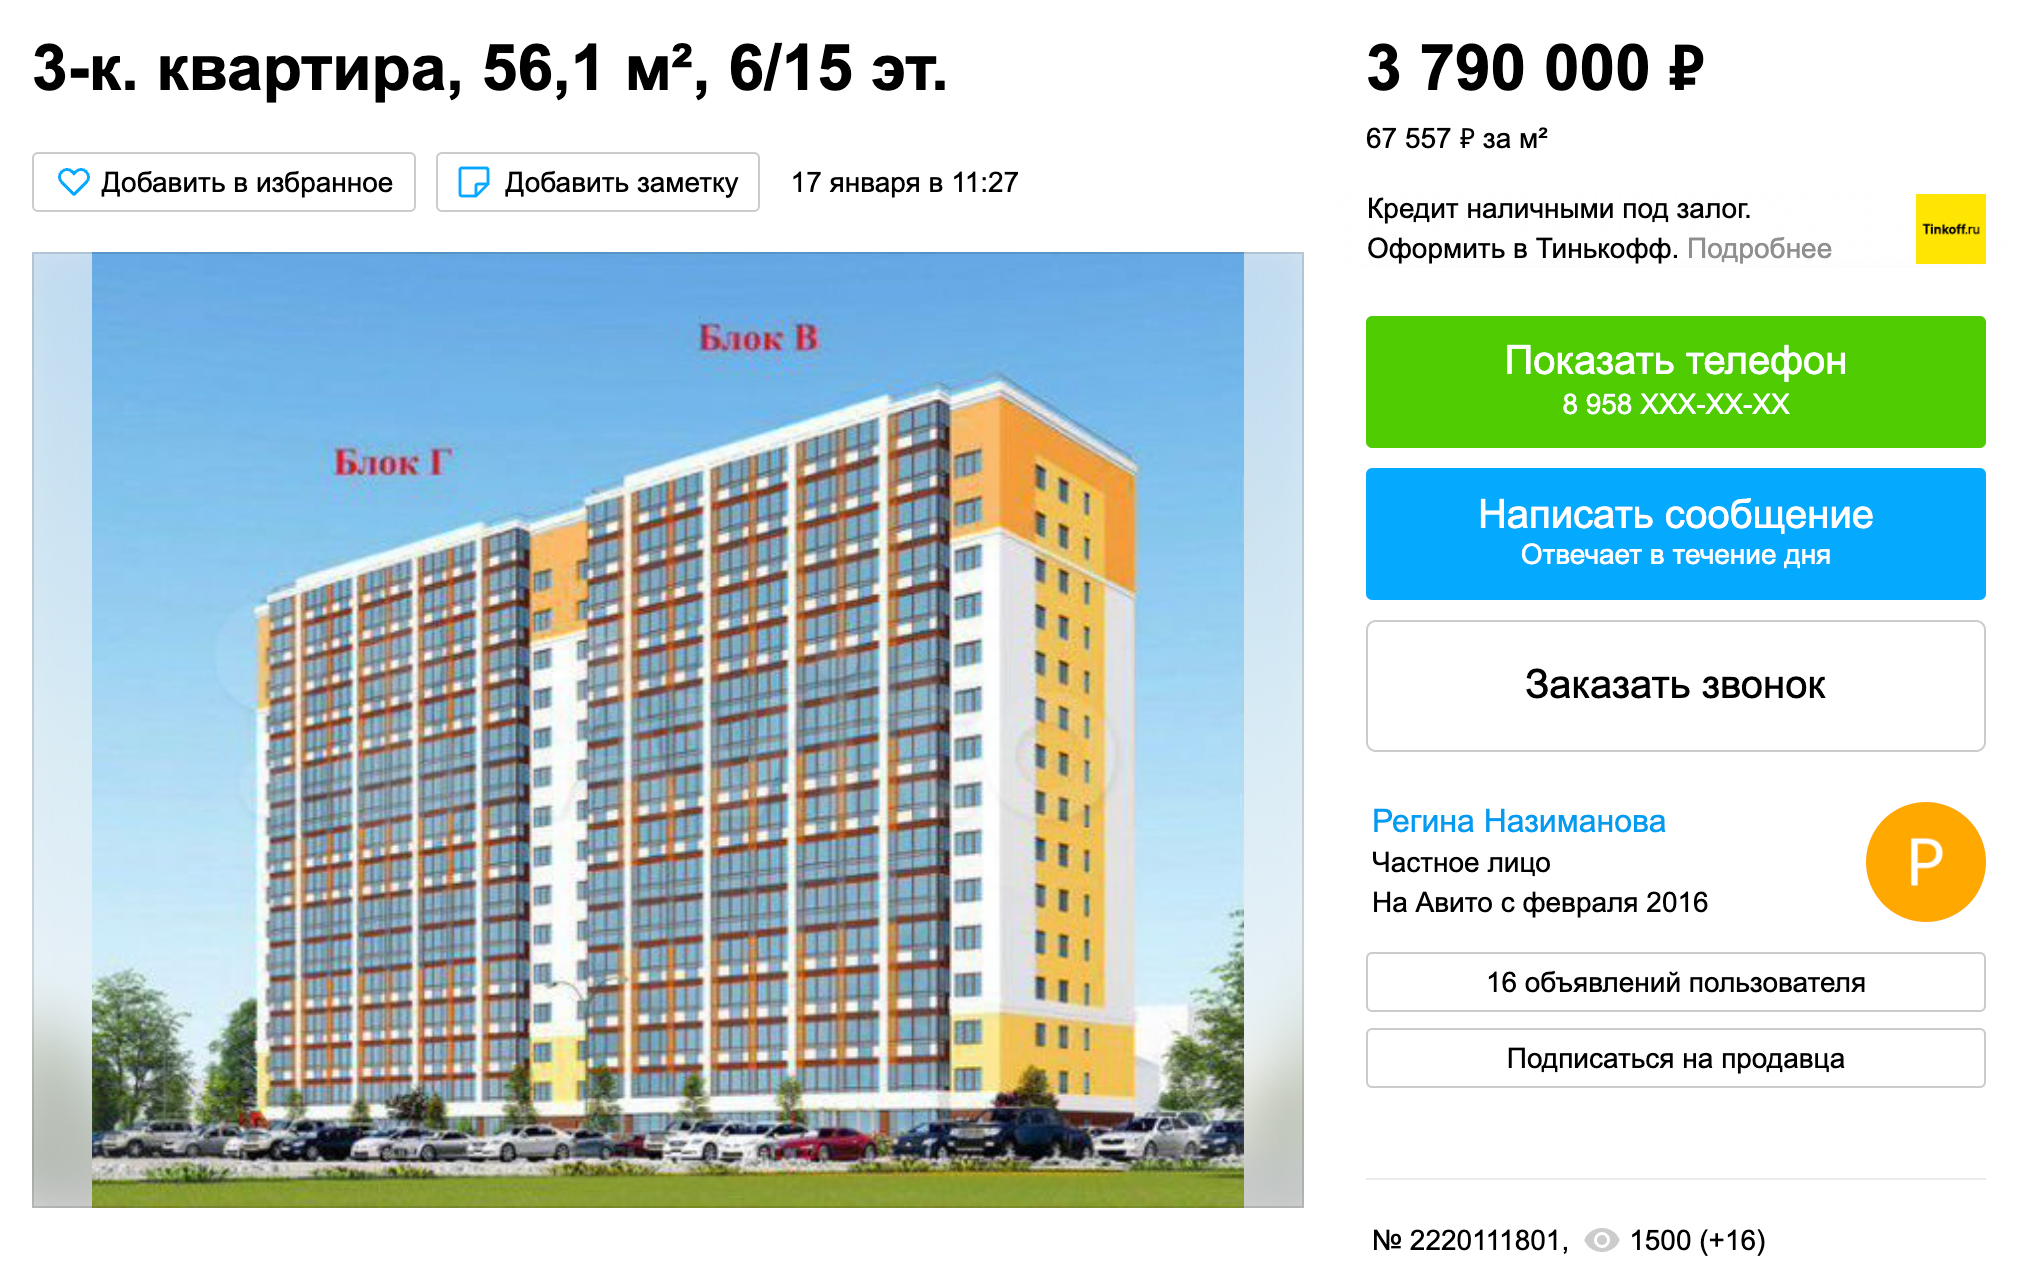 Трешки тоже в основном продаются в недостроенных домах. Цена — от 3,8 млн рублей